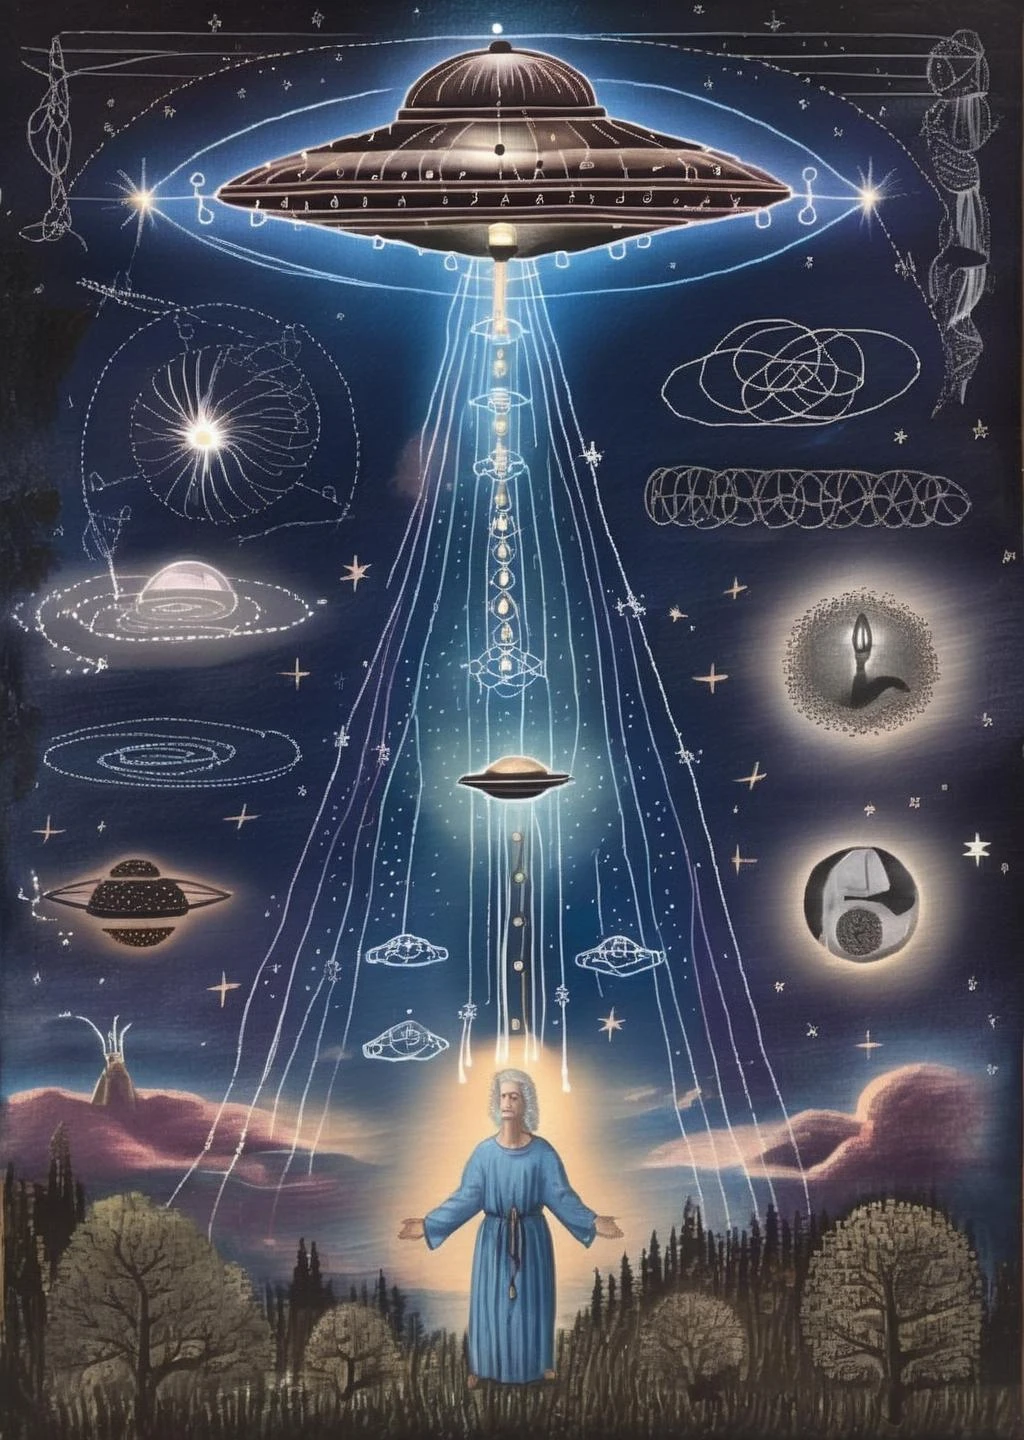 Чародейский звездный свет: НЛО излучают эфирные лучи, которые описывают космические откровения на ночном небе, переплетение мистики со звездным сиянием.